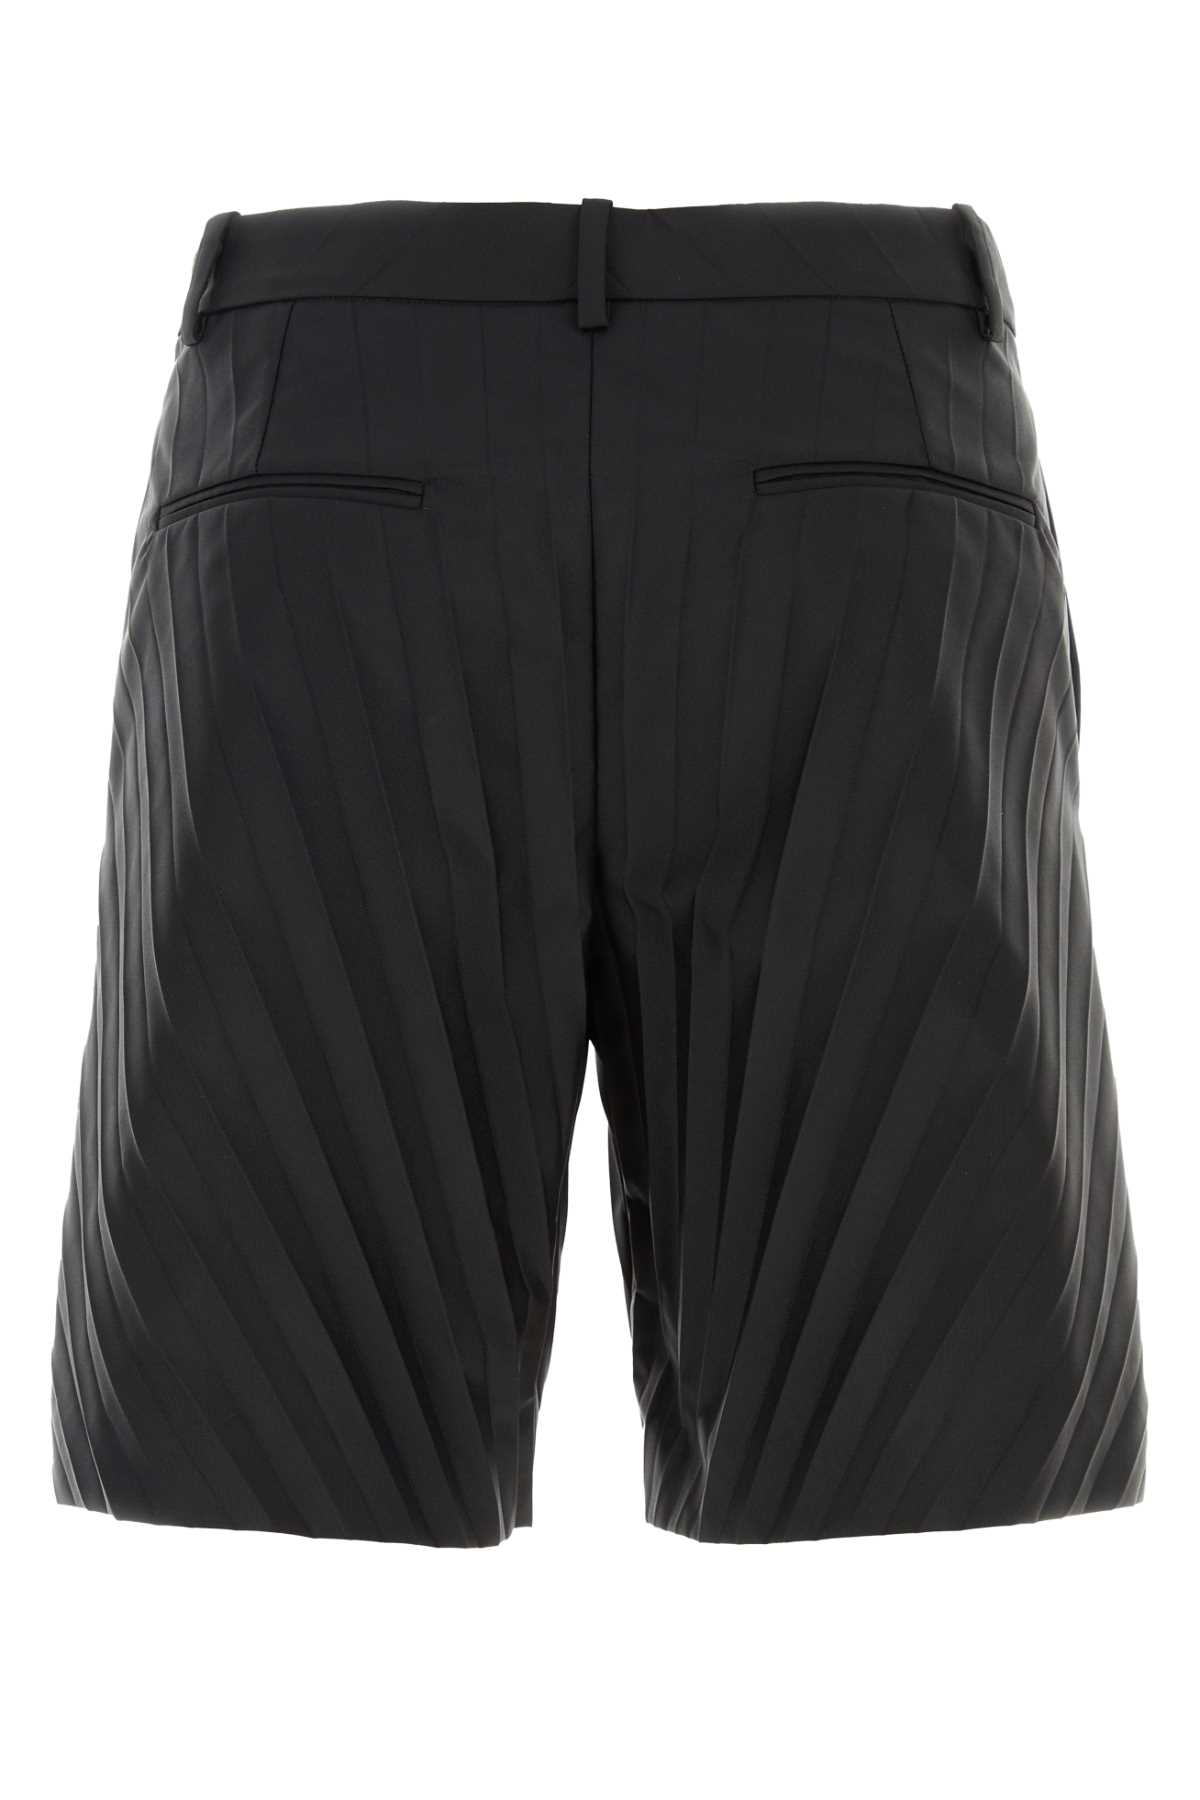 Shop Valentino Black Nylon Bermuda Shorts